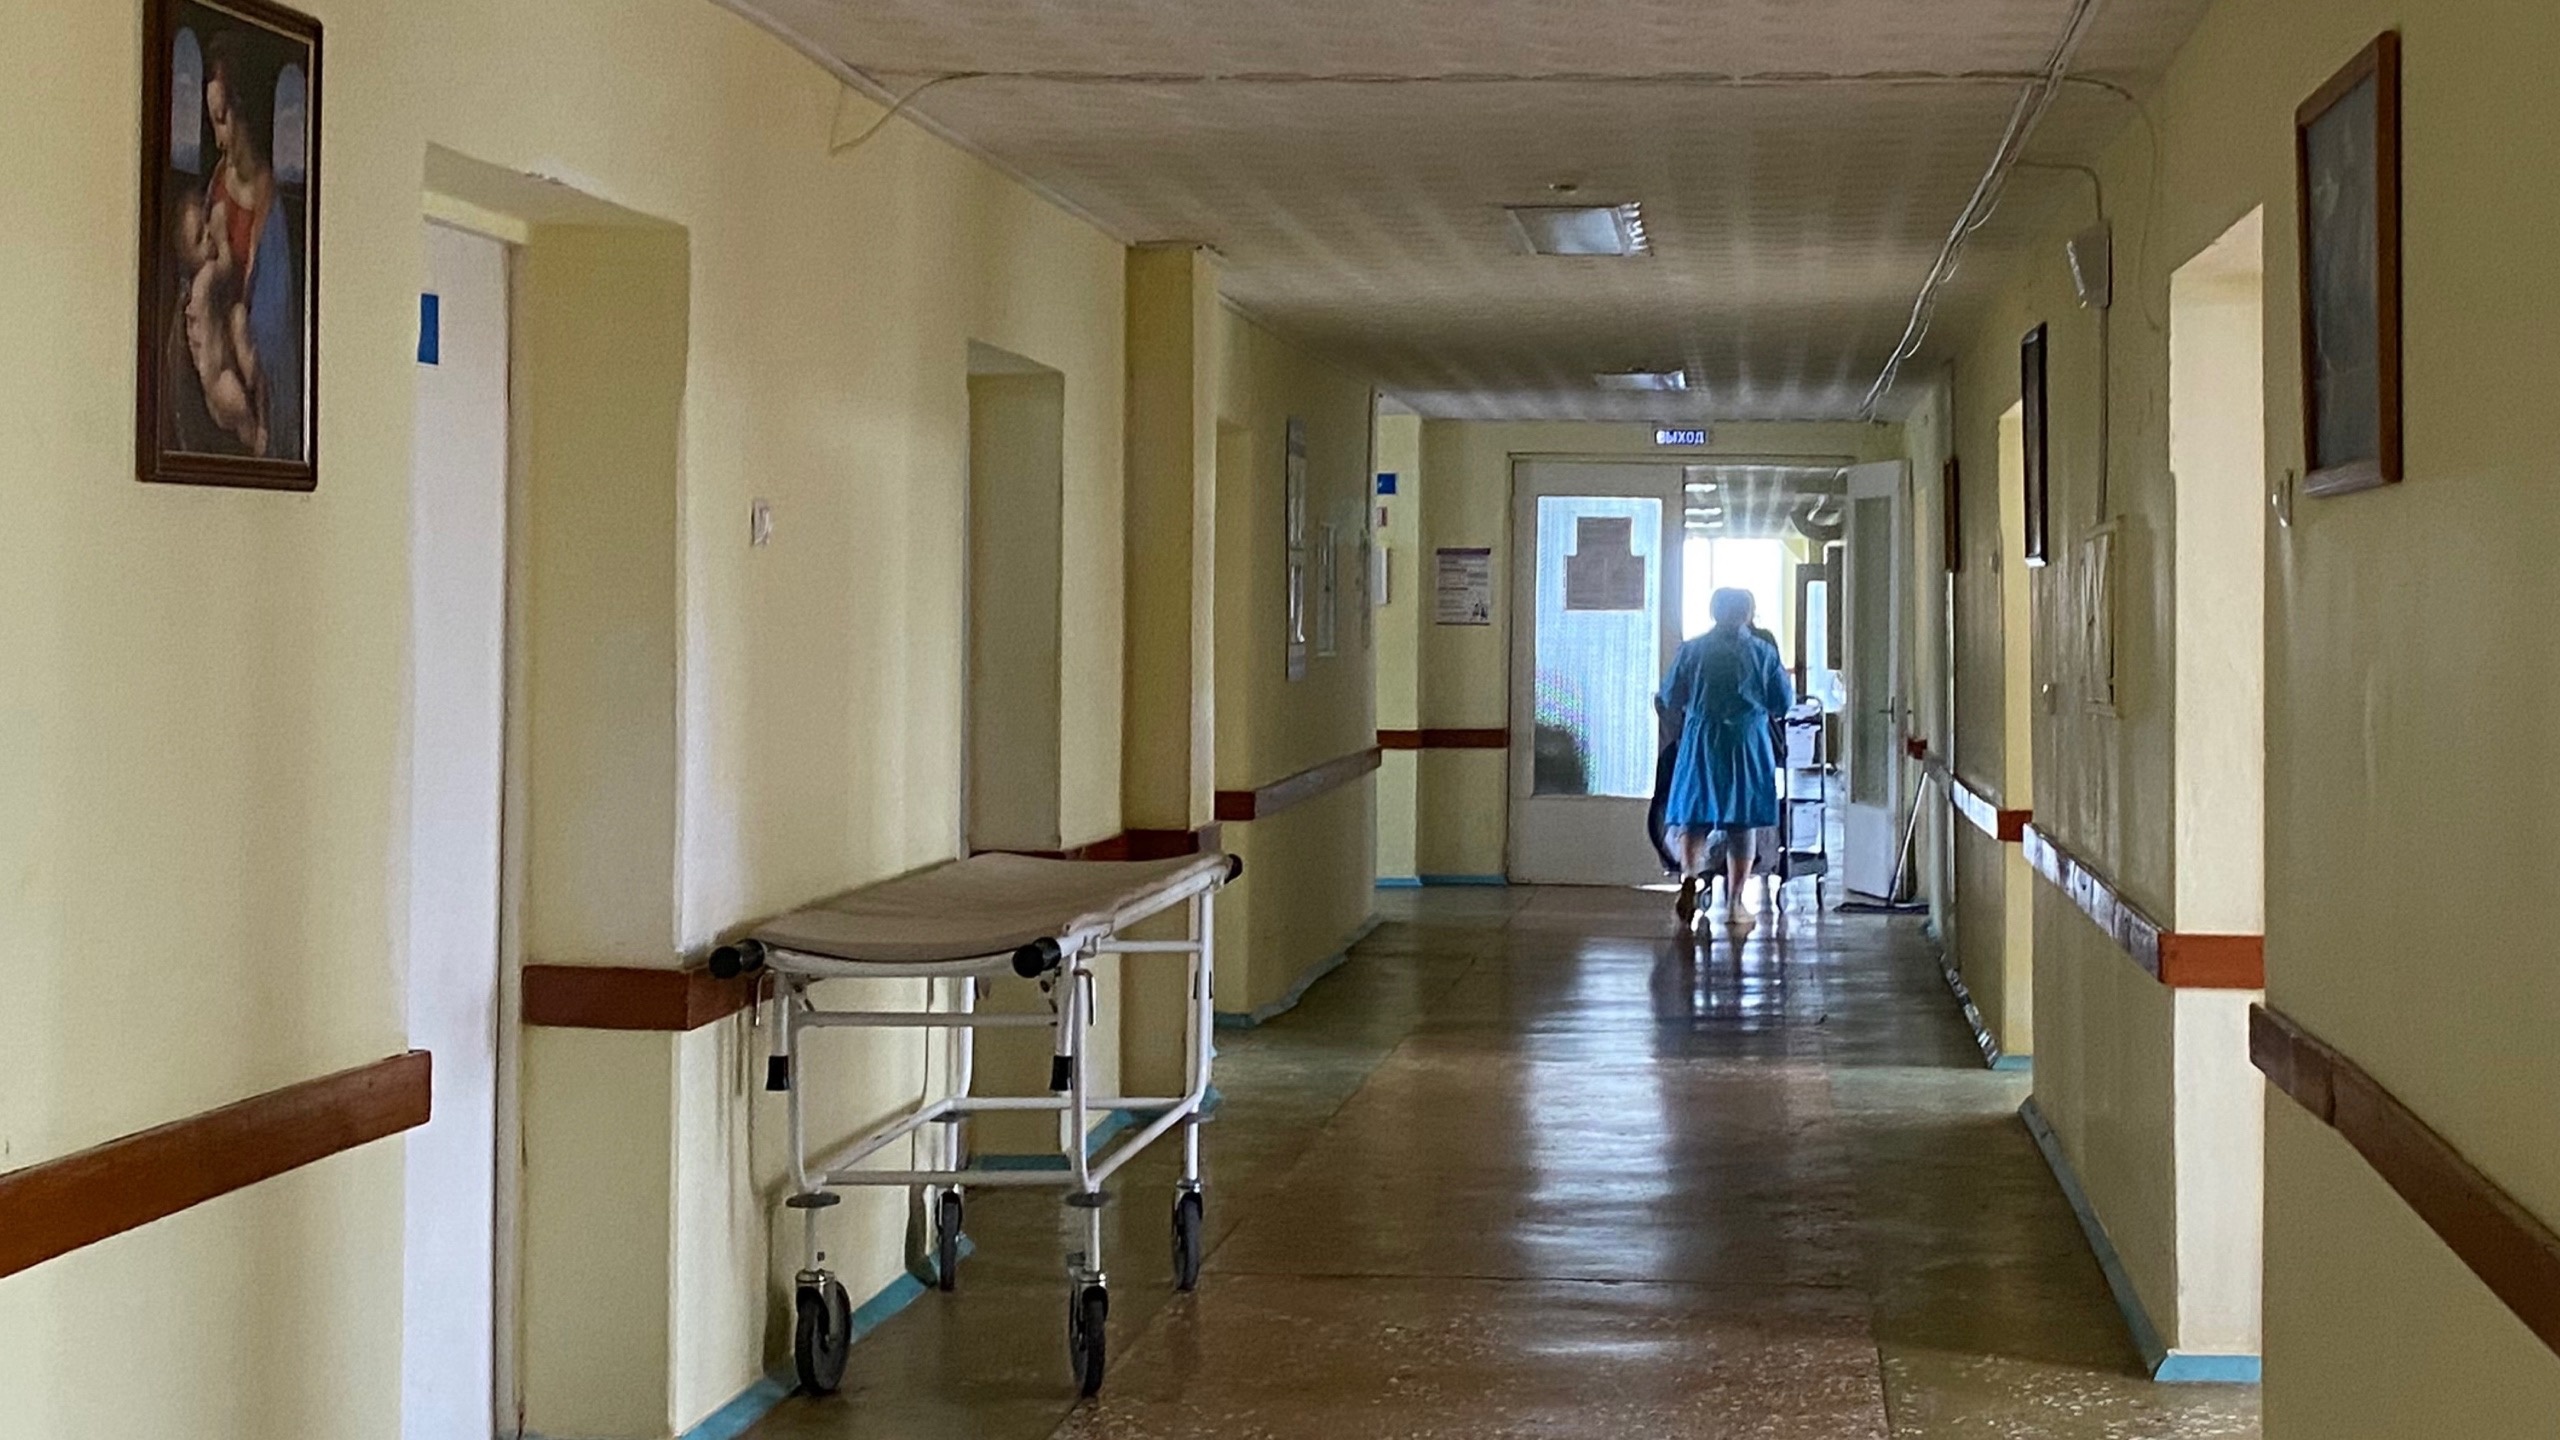 Госдума приняла решение насчет нижегородского законопроекта о запрете абортов в частных клиниках